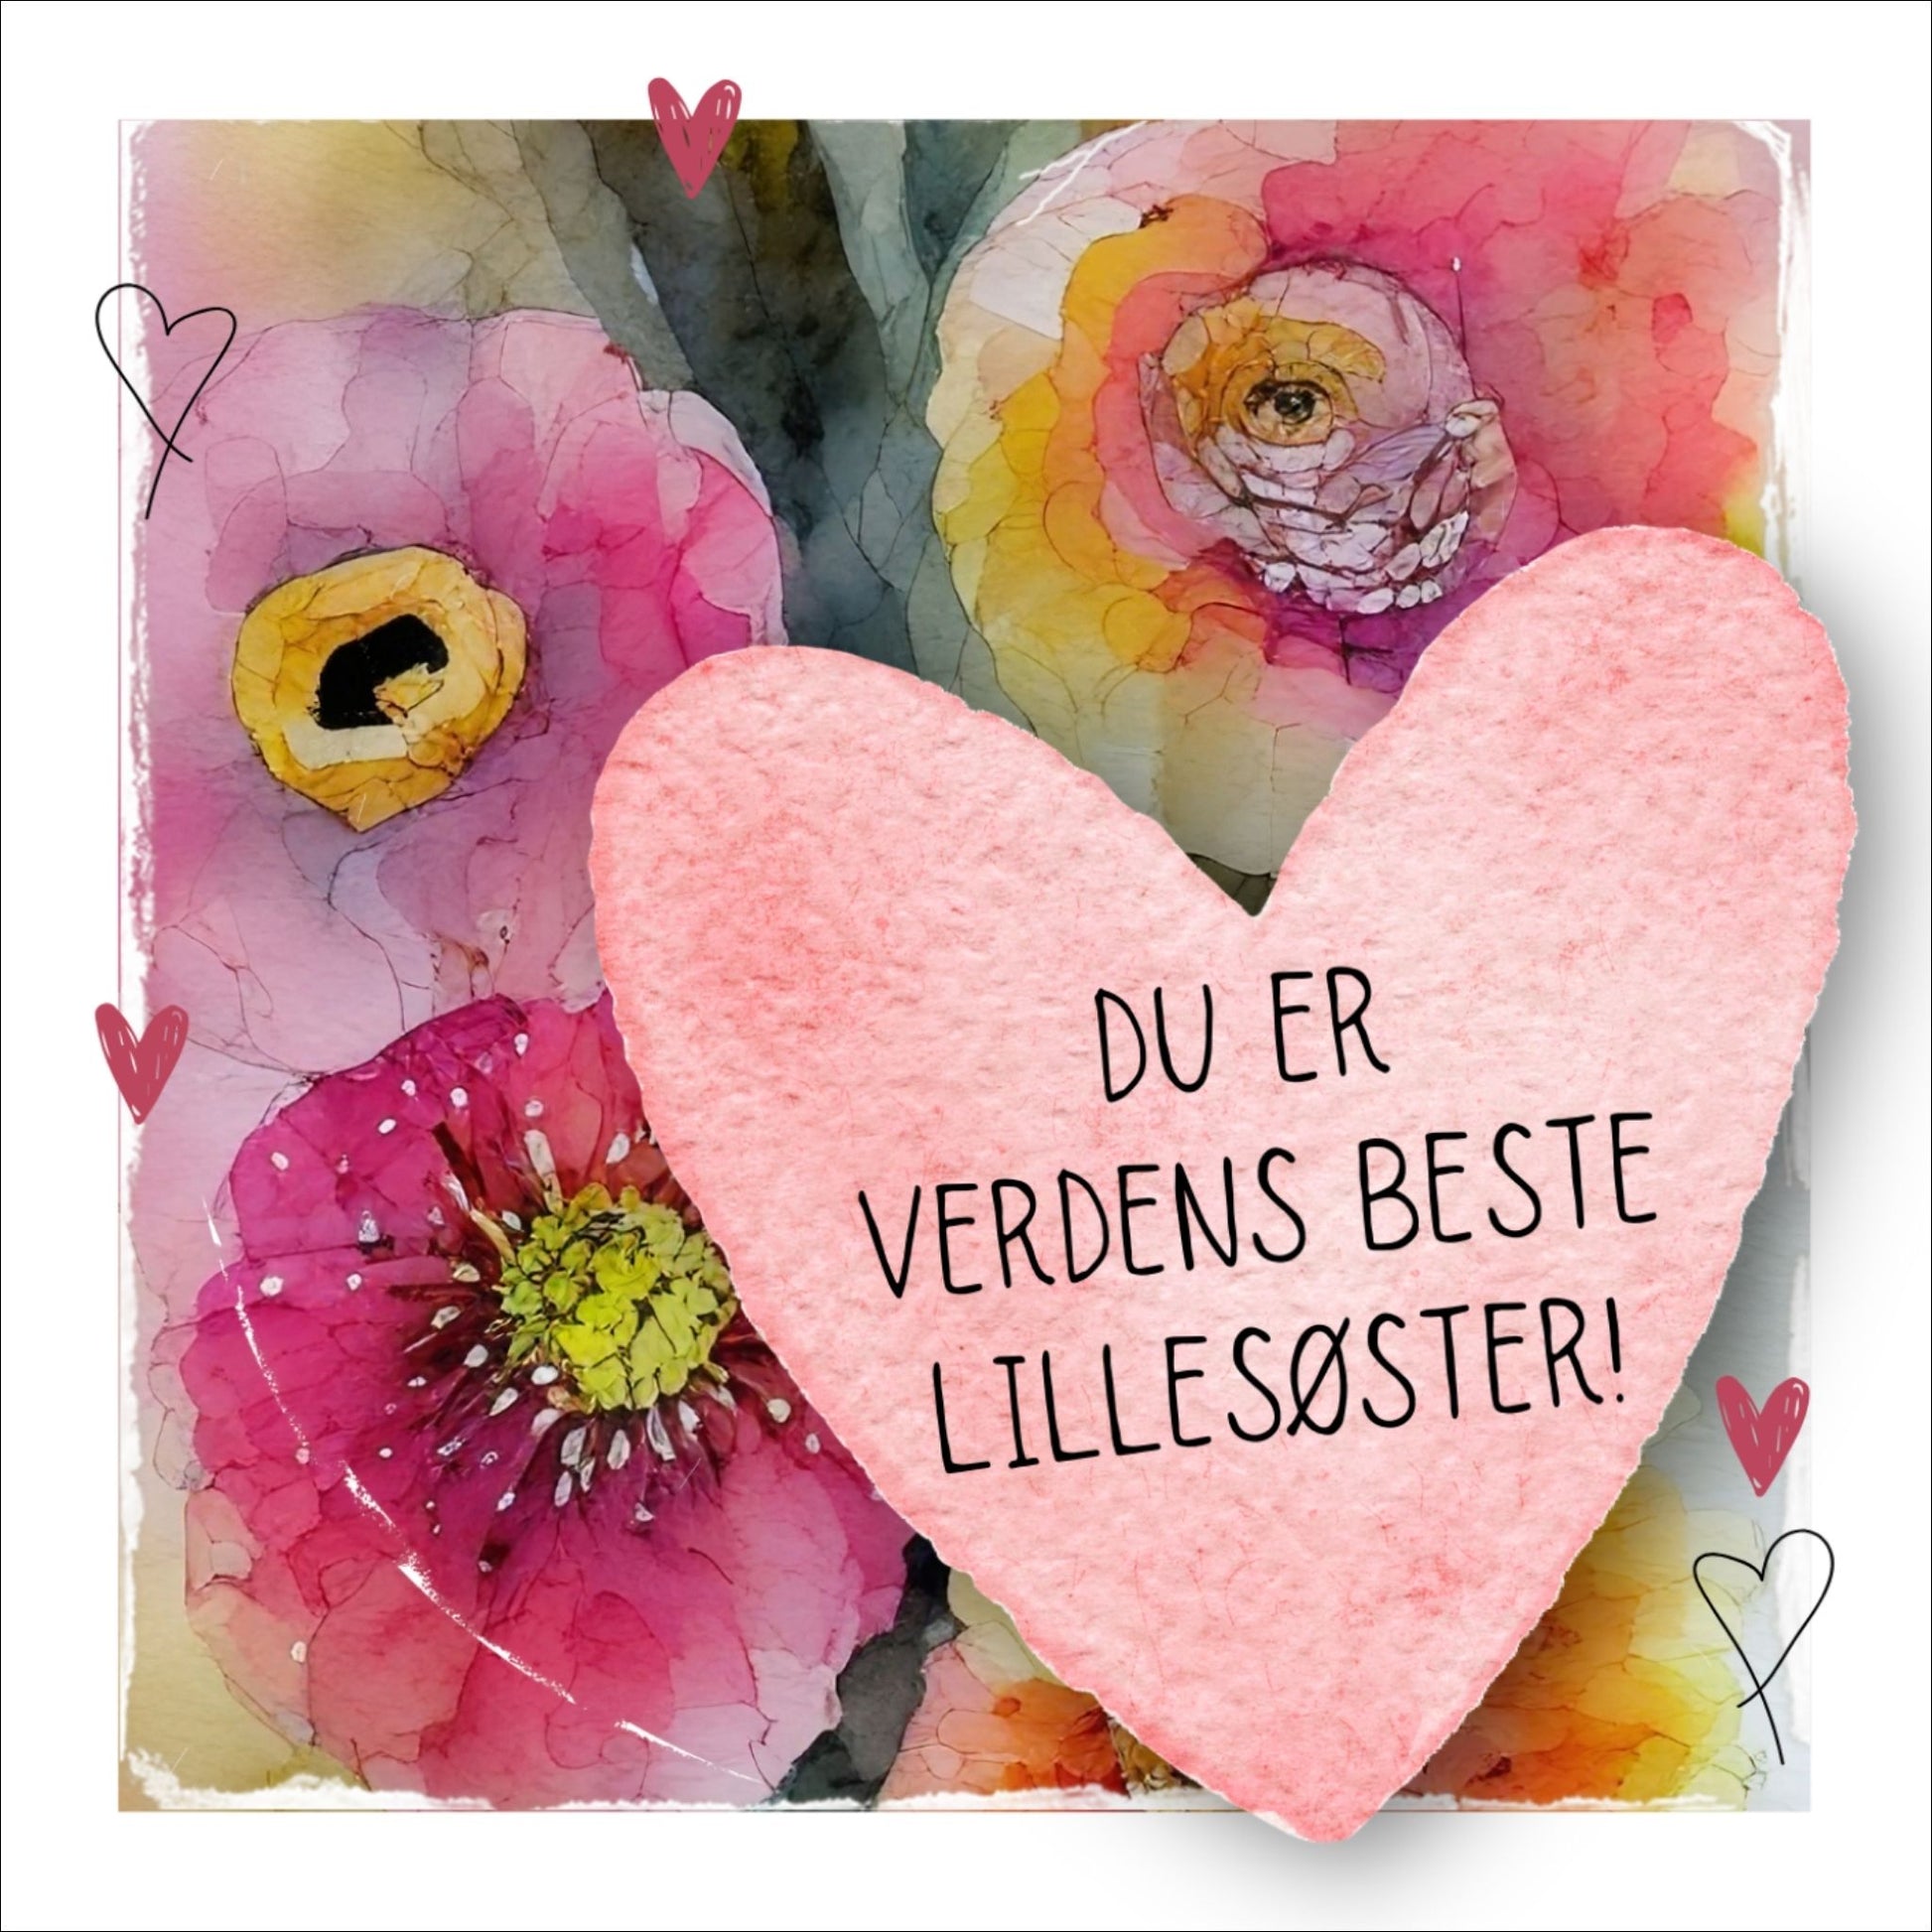 Grafisk plakat med et rosa hjerte påført tekst "Du er verdens beste lillesøster". Bagrunn i cerise og guloransje blomster. Kortet har en hvit kant rundt på 1,5 cm.